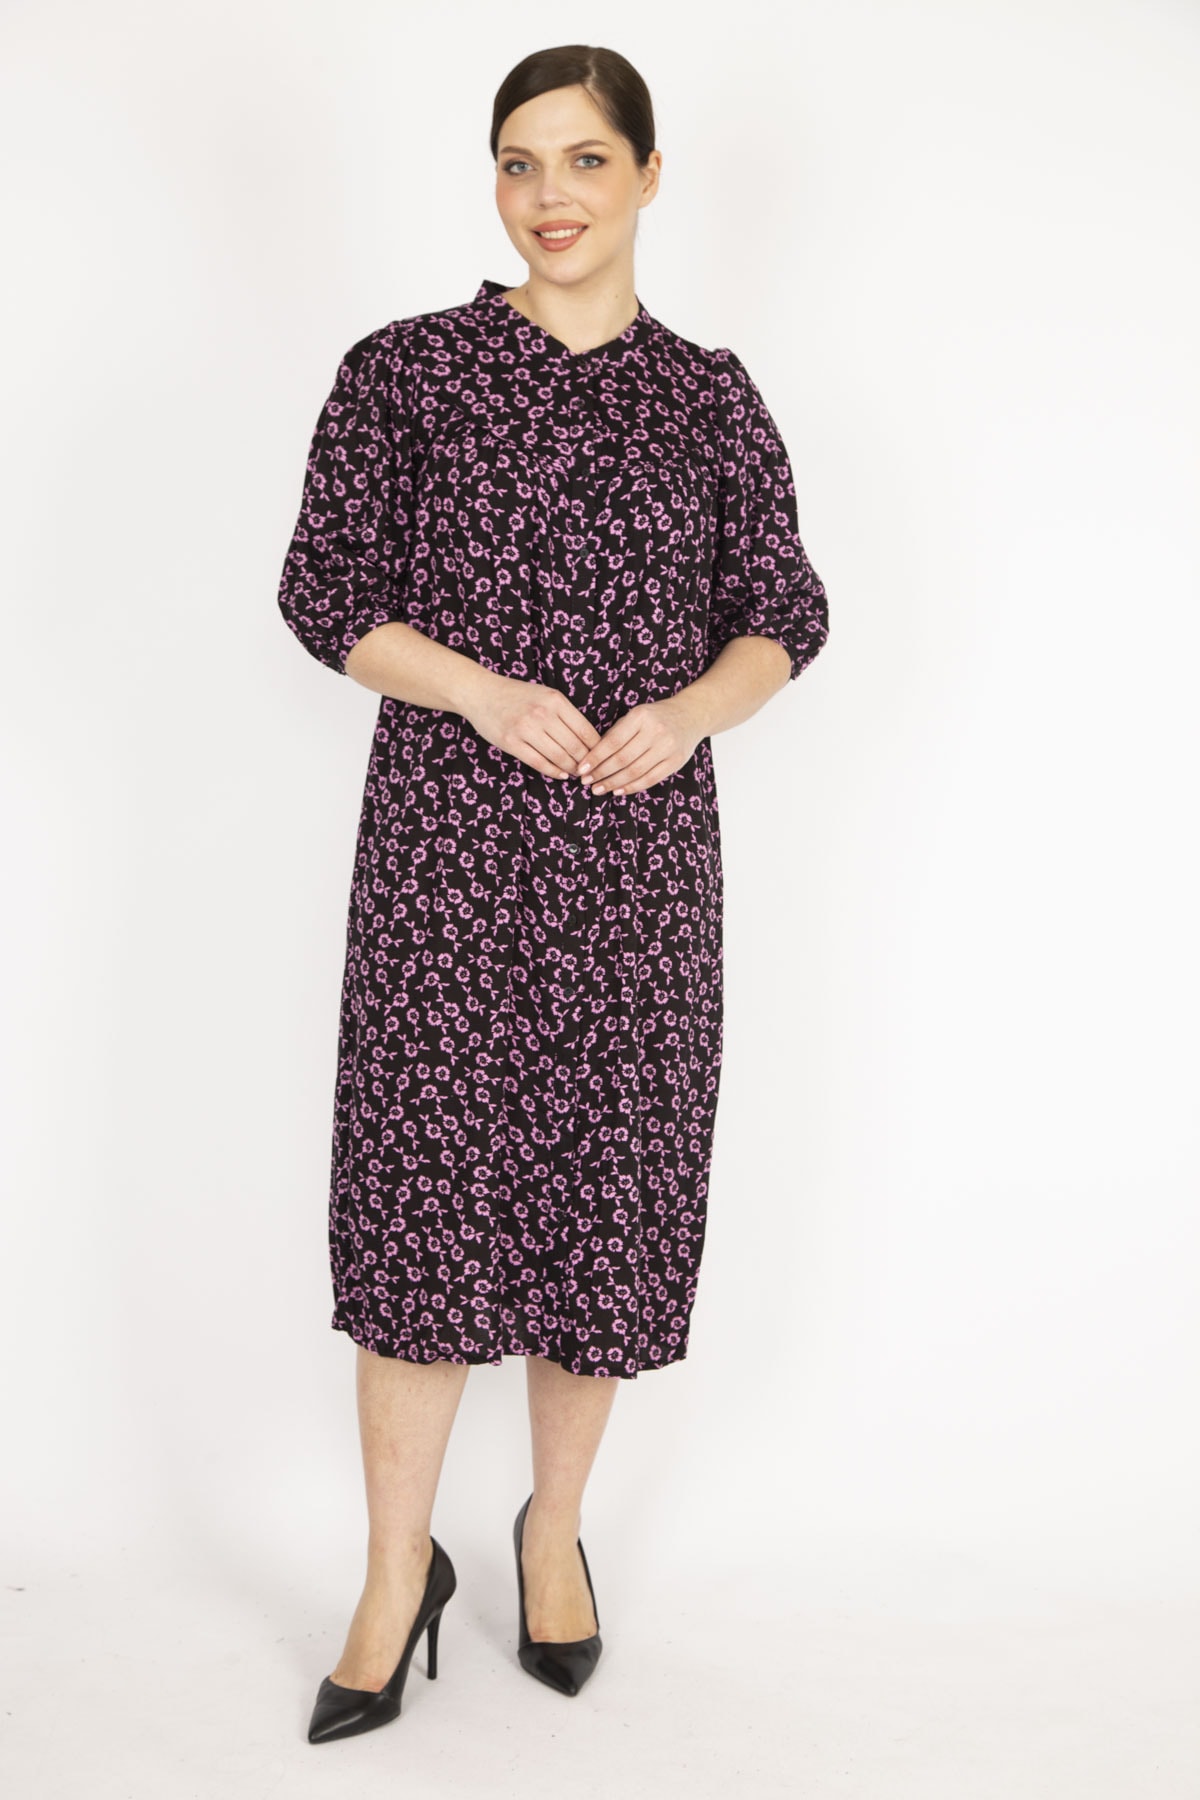 Levně Şans Women's Colorful Large Size Woven Viscose Fabric Front Button Dress